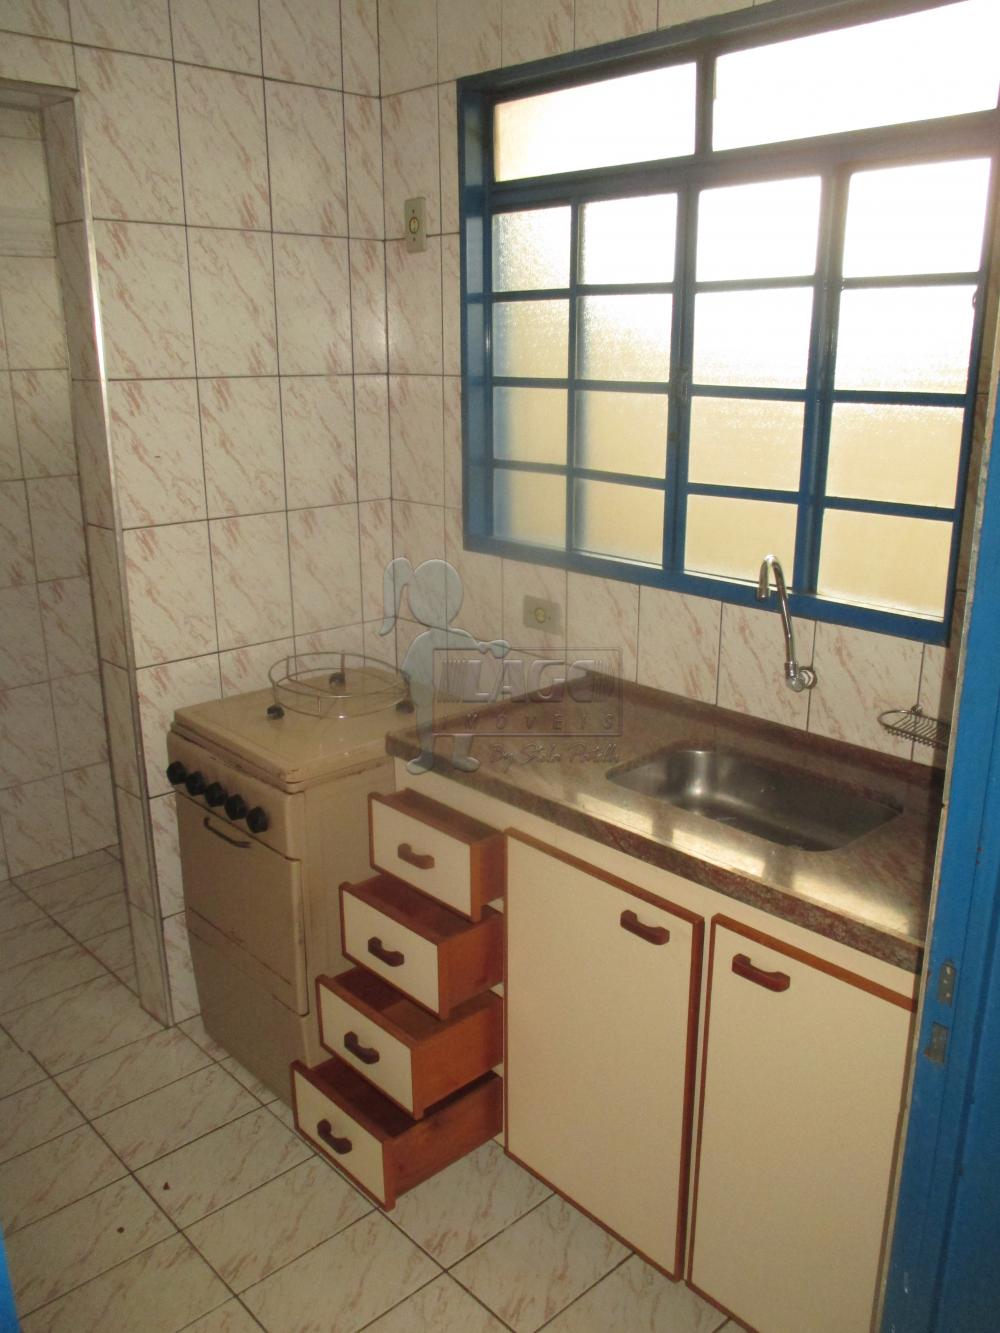 Alugar Apartamentos / Kitchenet / Flat em Ribeirão Preto R$ 750,00 - Foto 5